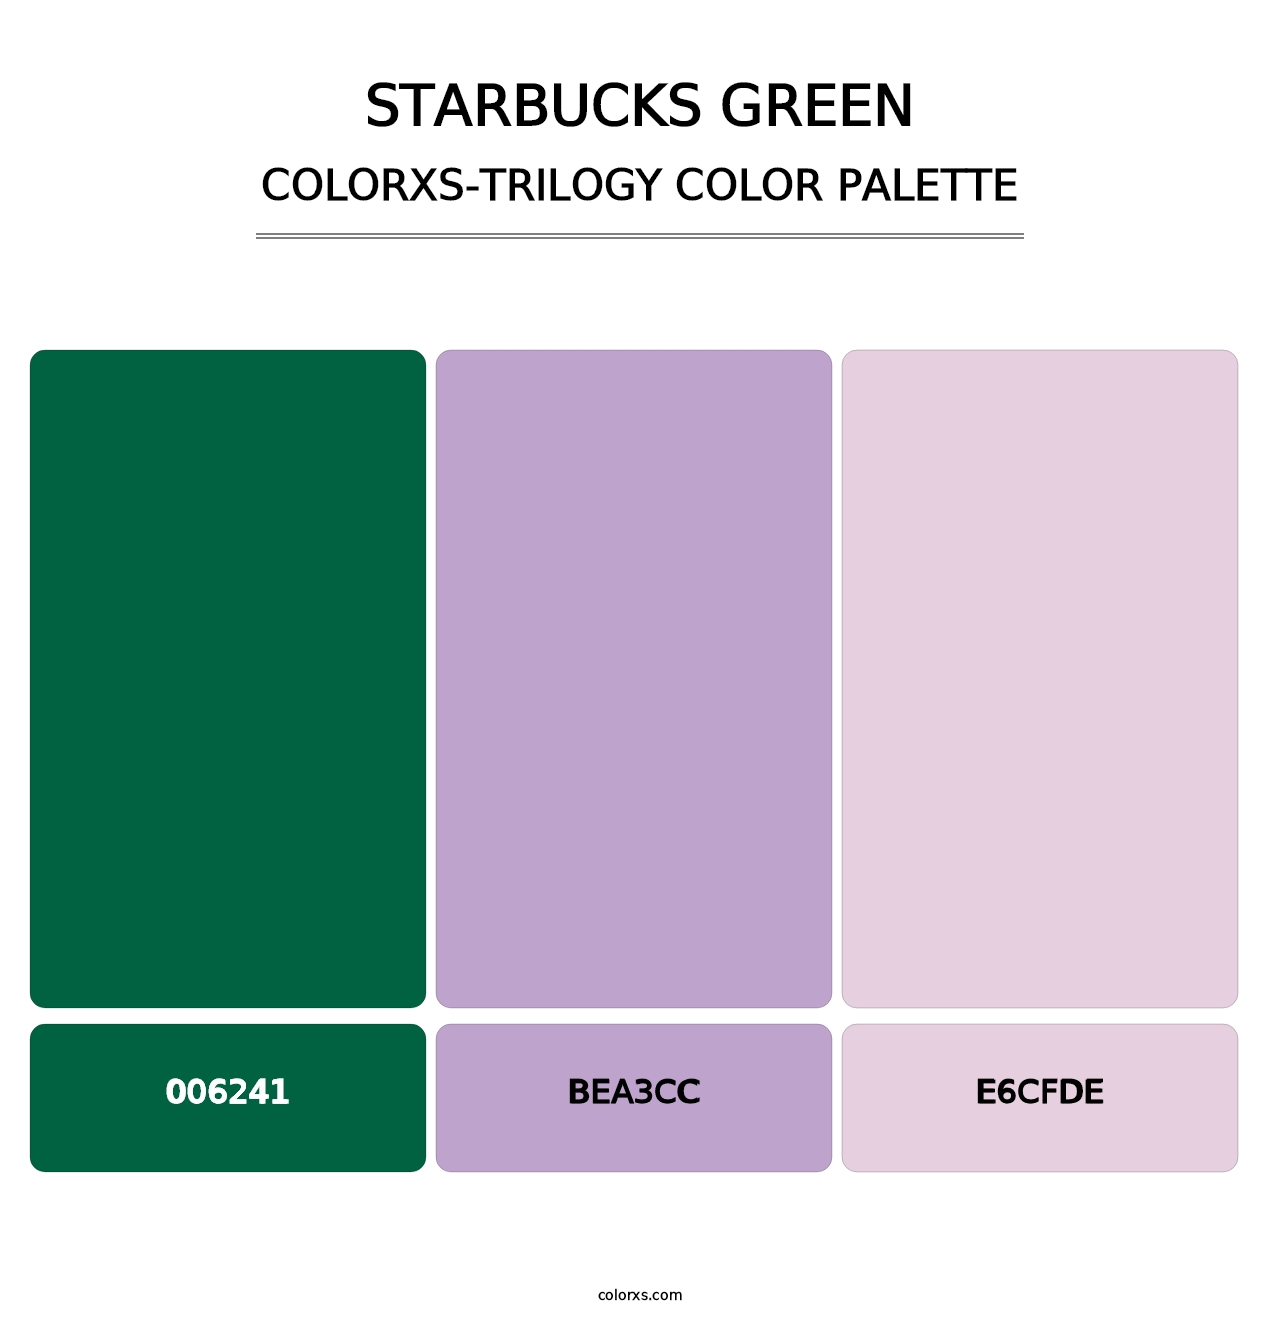 Starbucks Green - Colorxs Trilogy Palette